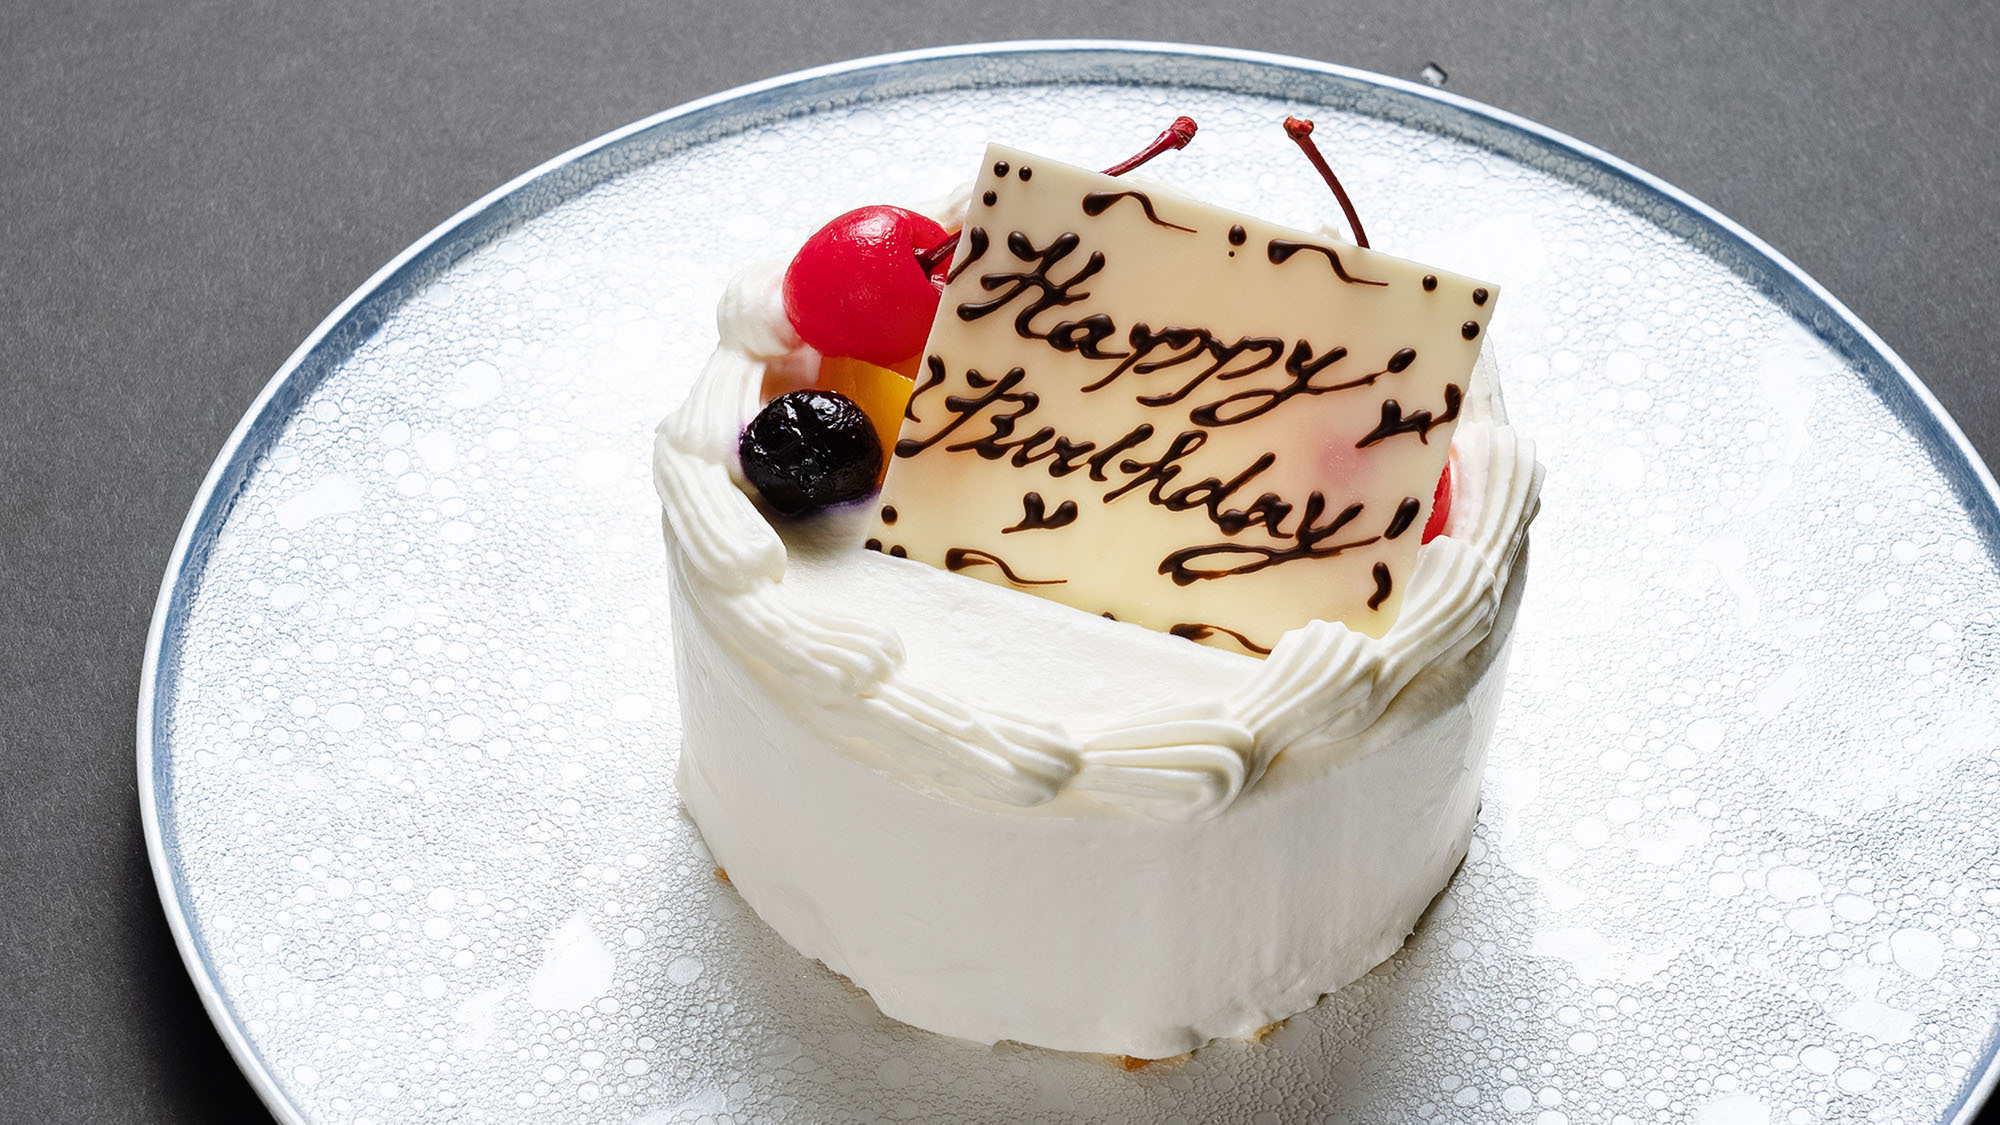 ・【アニバーサリー】結婚記念日や誕生日など、アニバーサリーケーキでお祝い♪